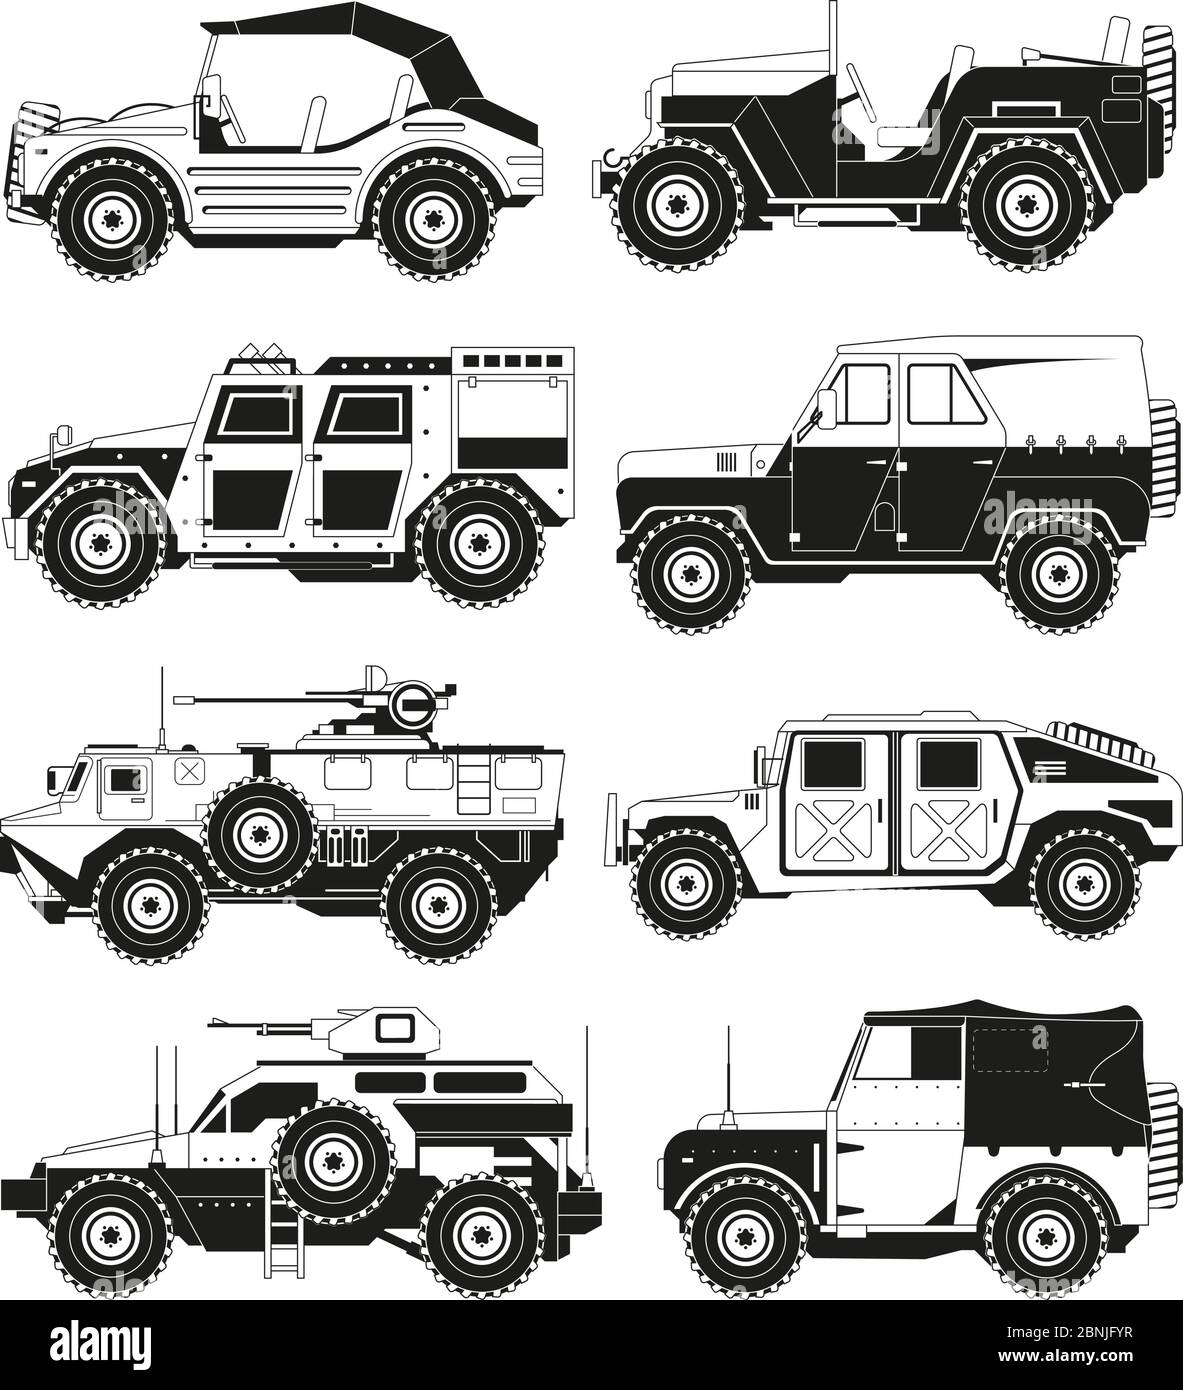 Immagini monocromatiche di veicoli militari. Illustrazioni dell'esercito Illustrazione Vettoriale